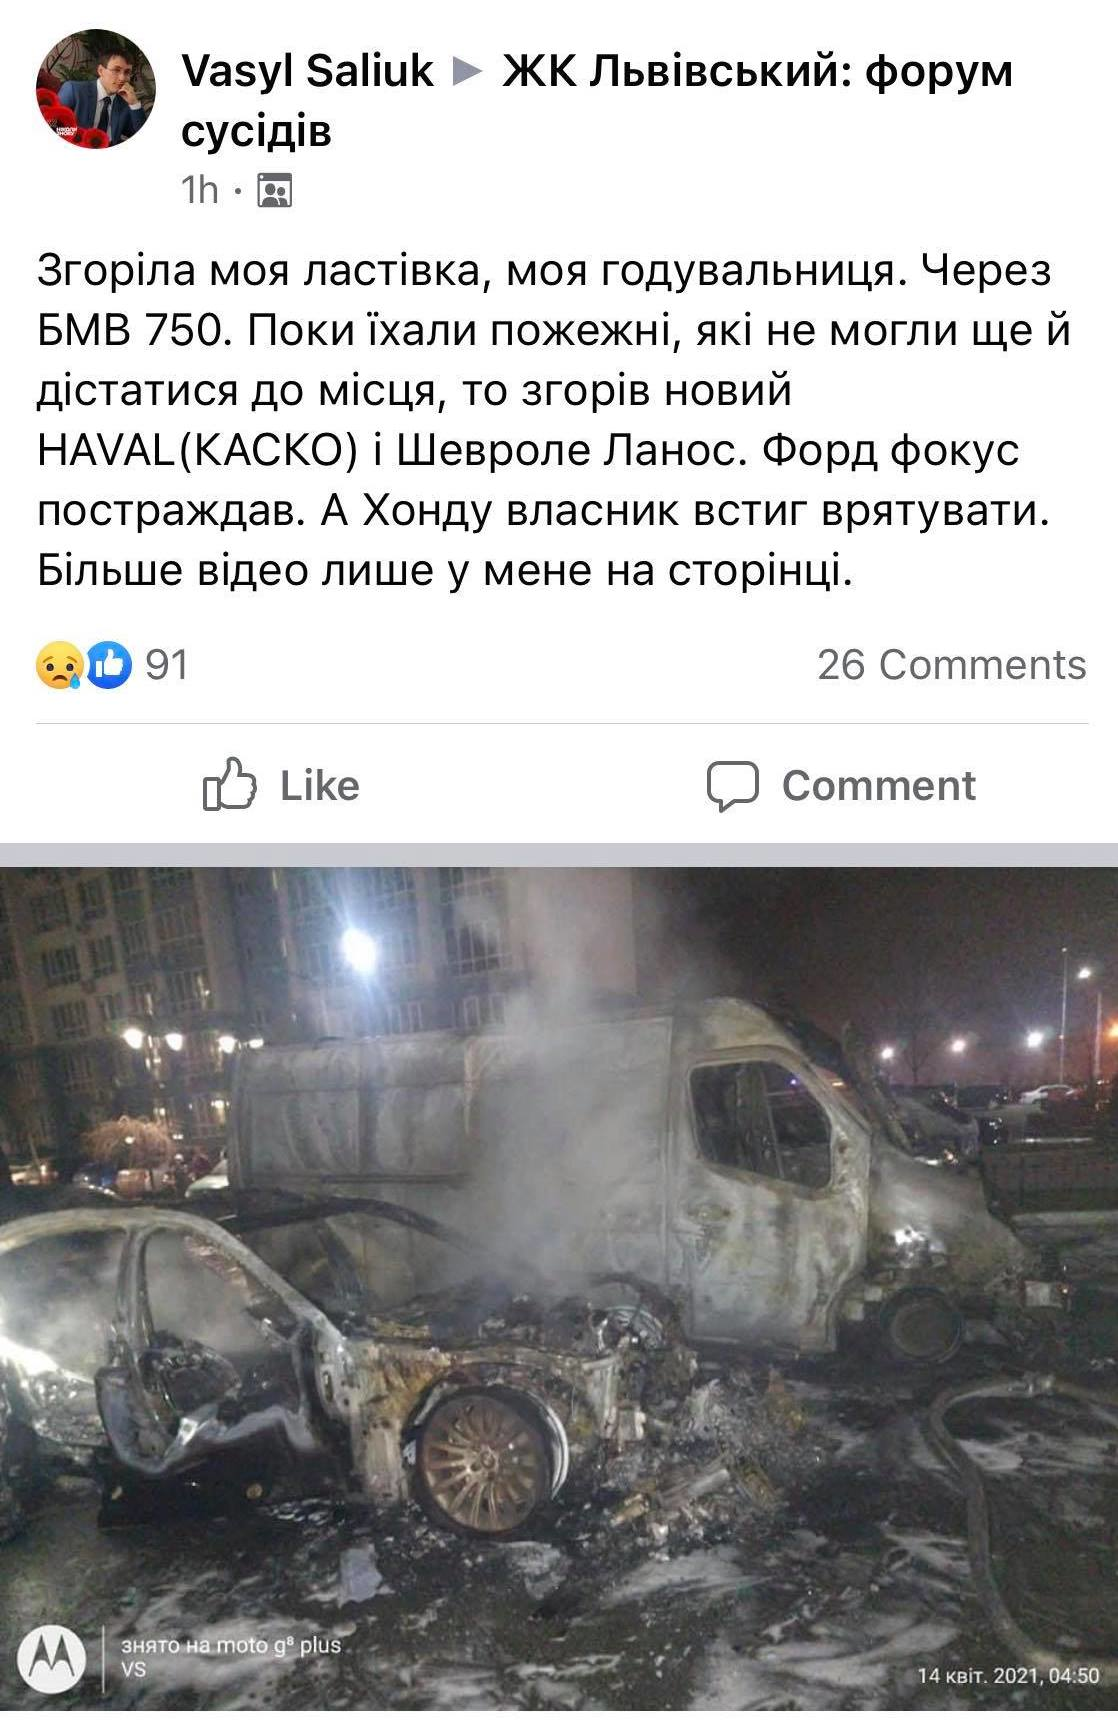 Допис постраждалого власника авто у спільноті ЖК «Львівський» на Facebook